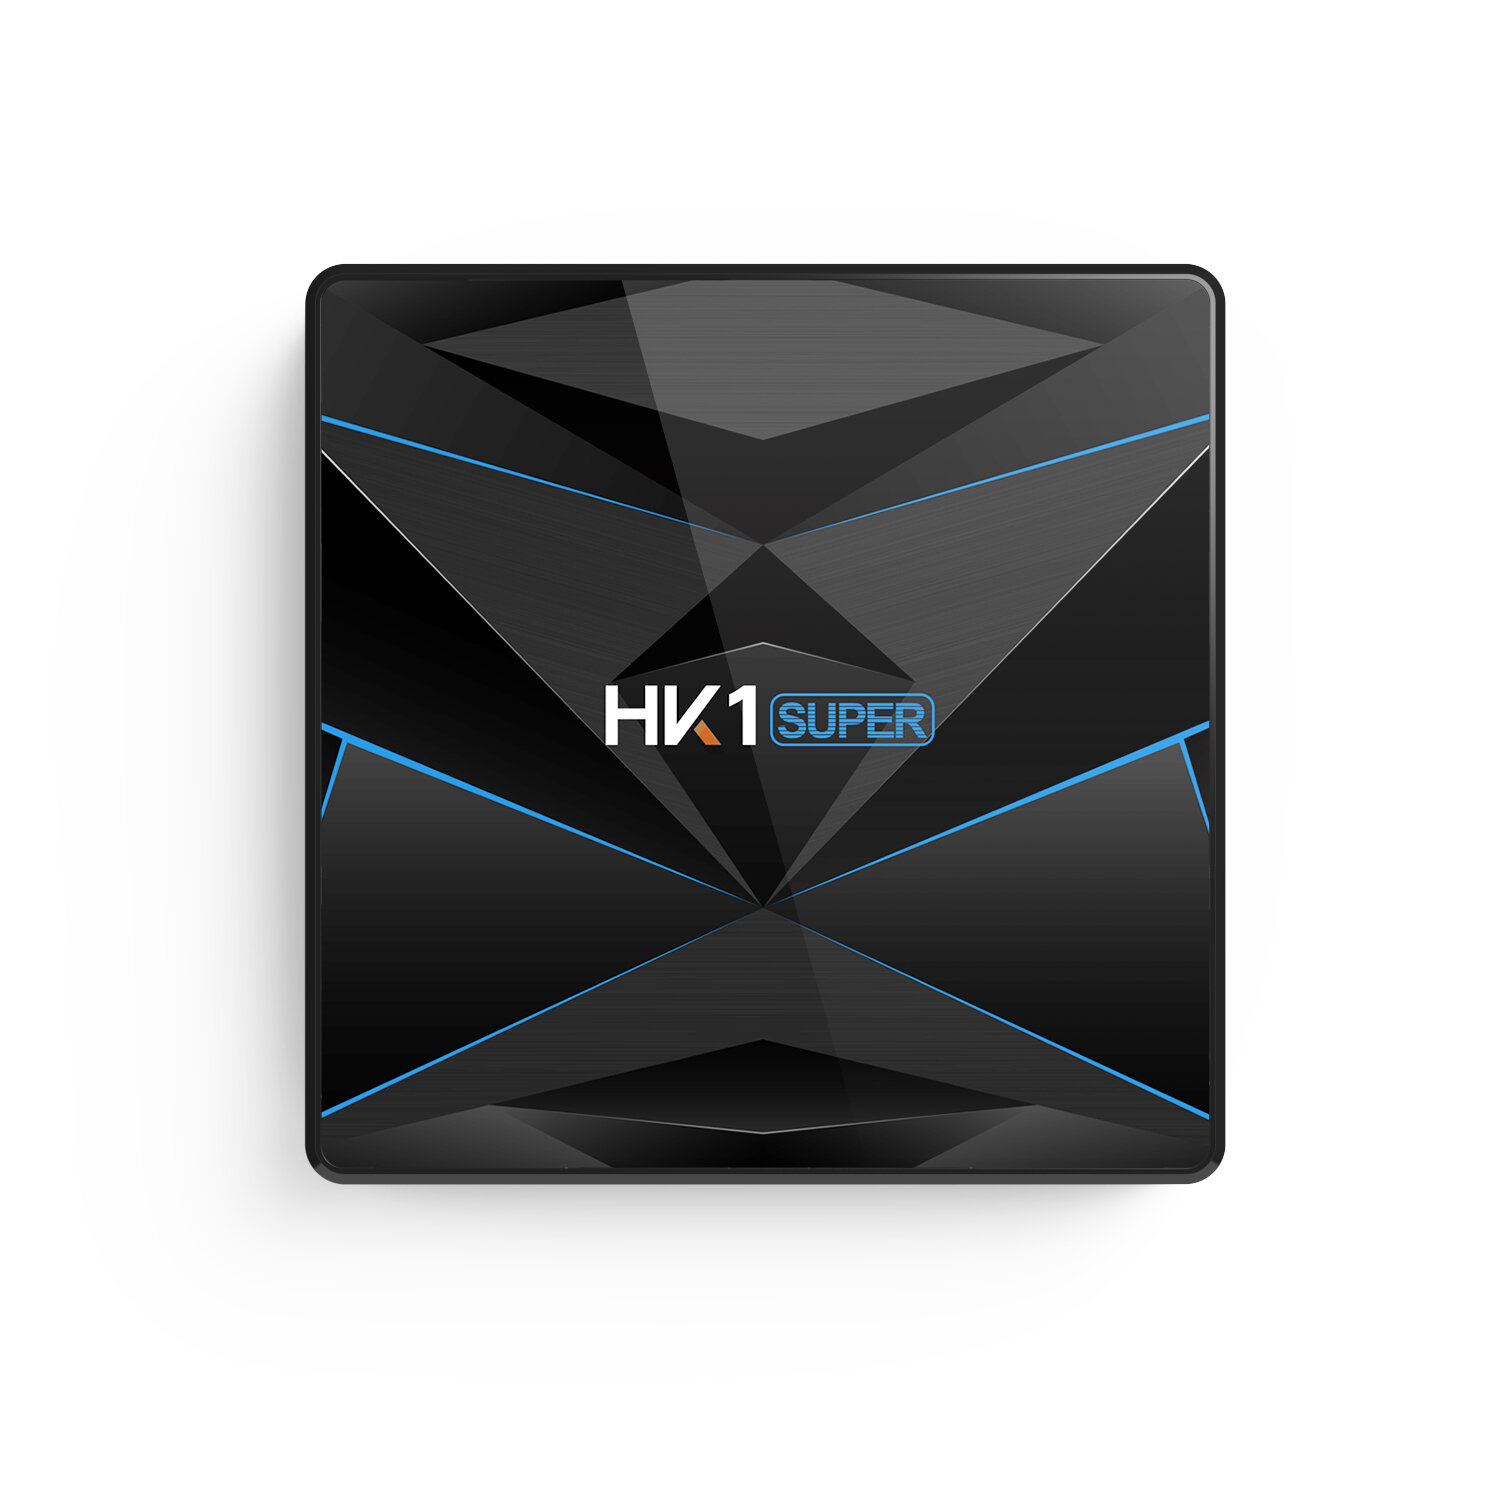 HK1 Super RK3318 2GB RAM 16GB ROM 5G WIFI bluetooth 4.0 Android 9.0 4K TV Box